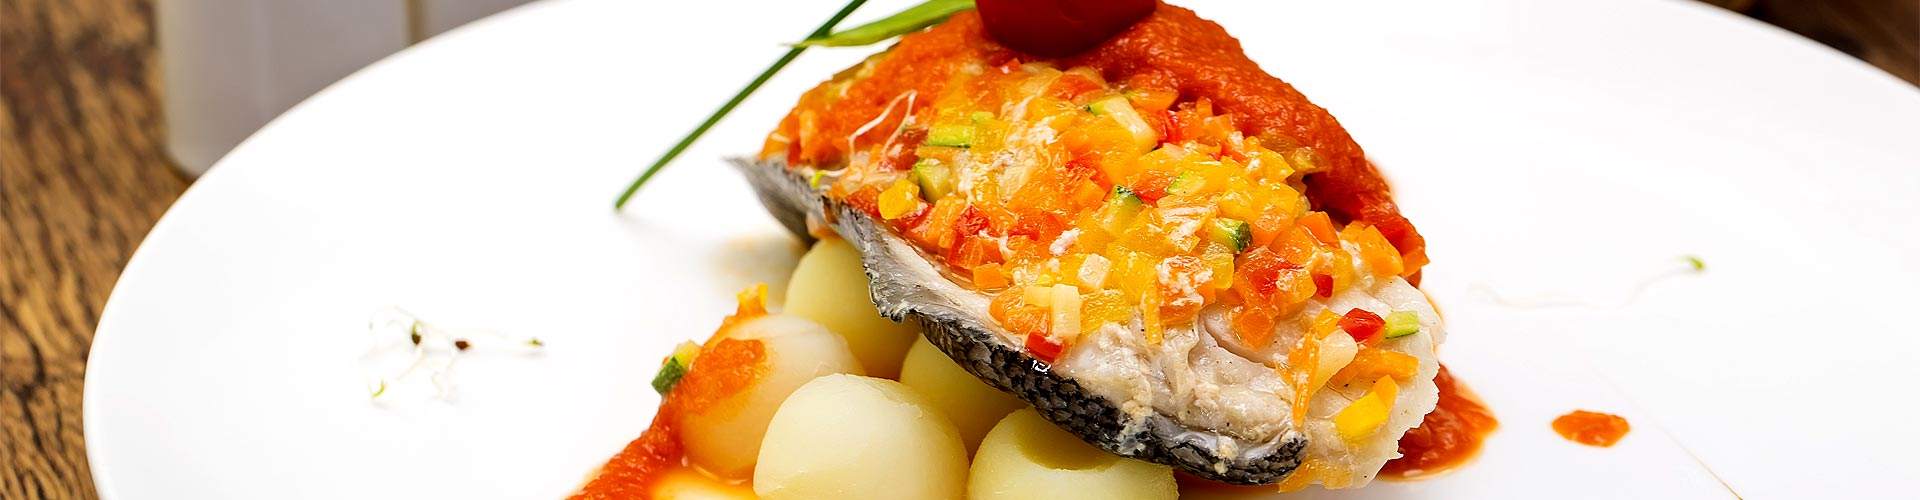 ¿Dónde comer pescado en Valverde del Majano?